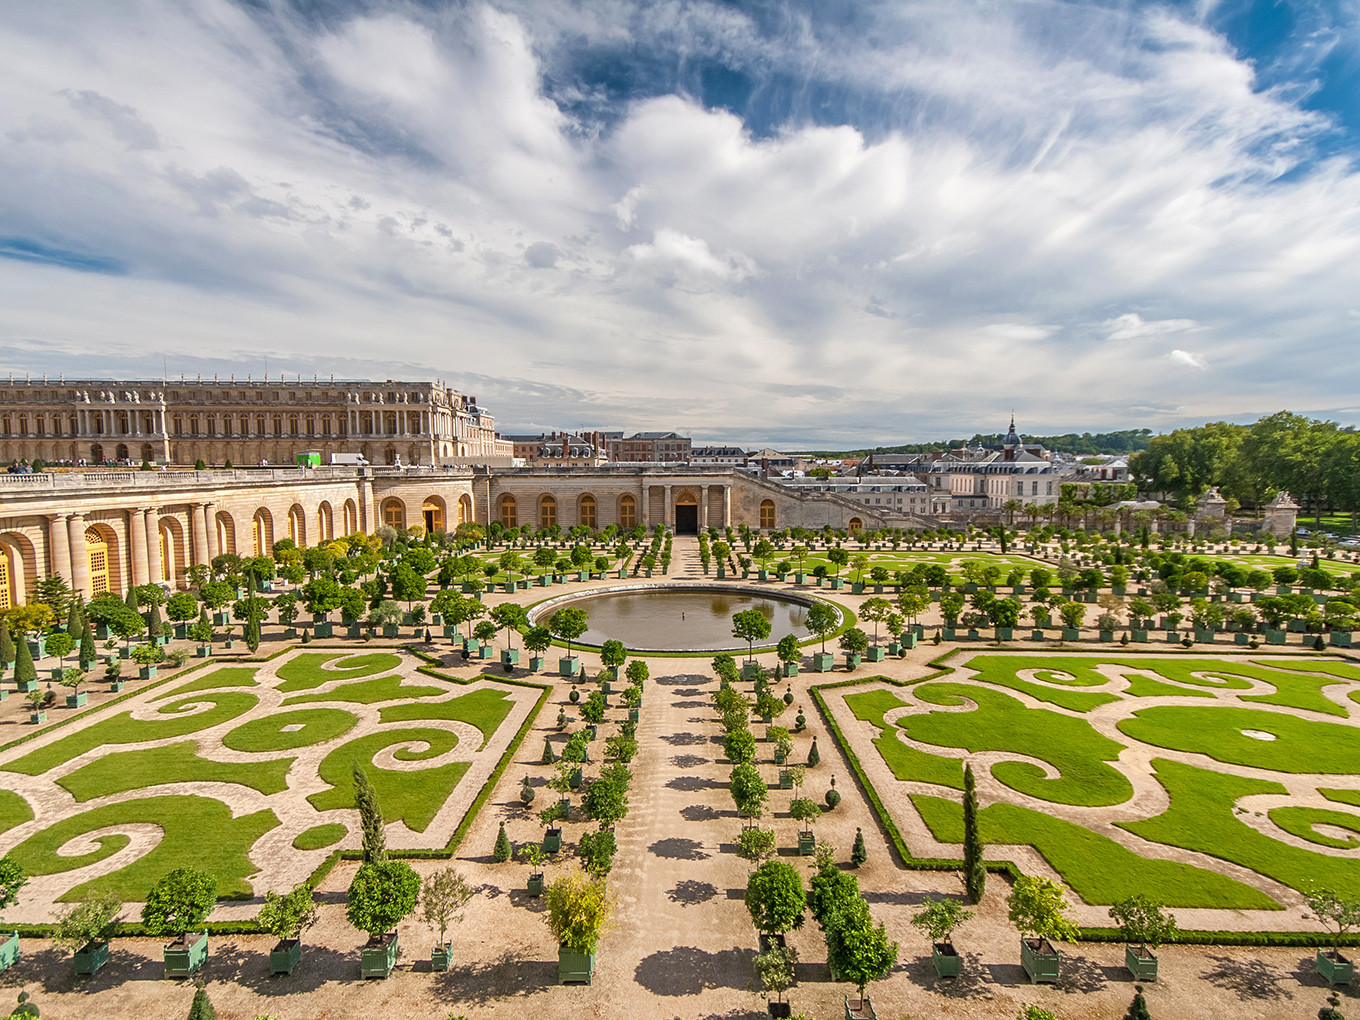 Chateau de versailles. Версальский дворец. Версаль. Дворец Версаль в Париже. Дворцово-парковый комплекс Версаль (Париж, Франция). Дворцовый комплекс Версаль.